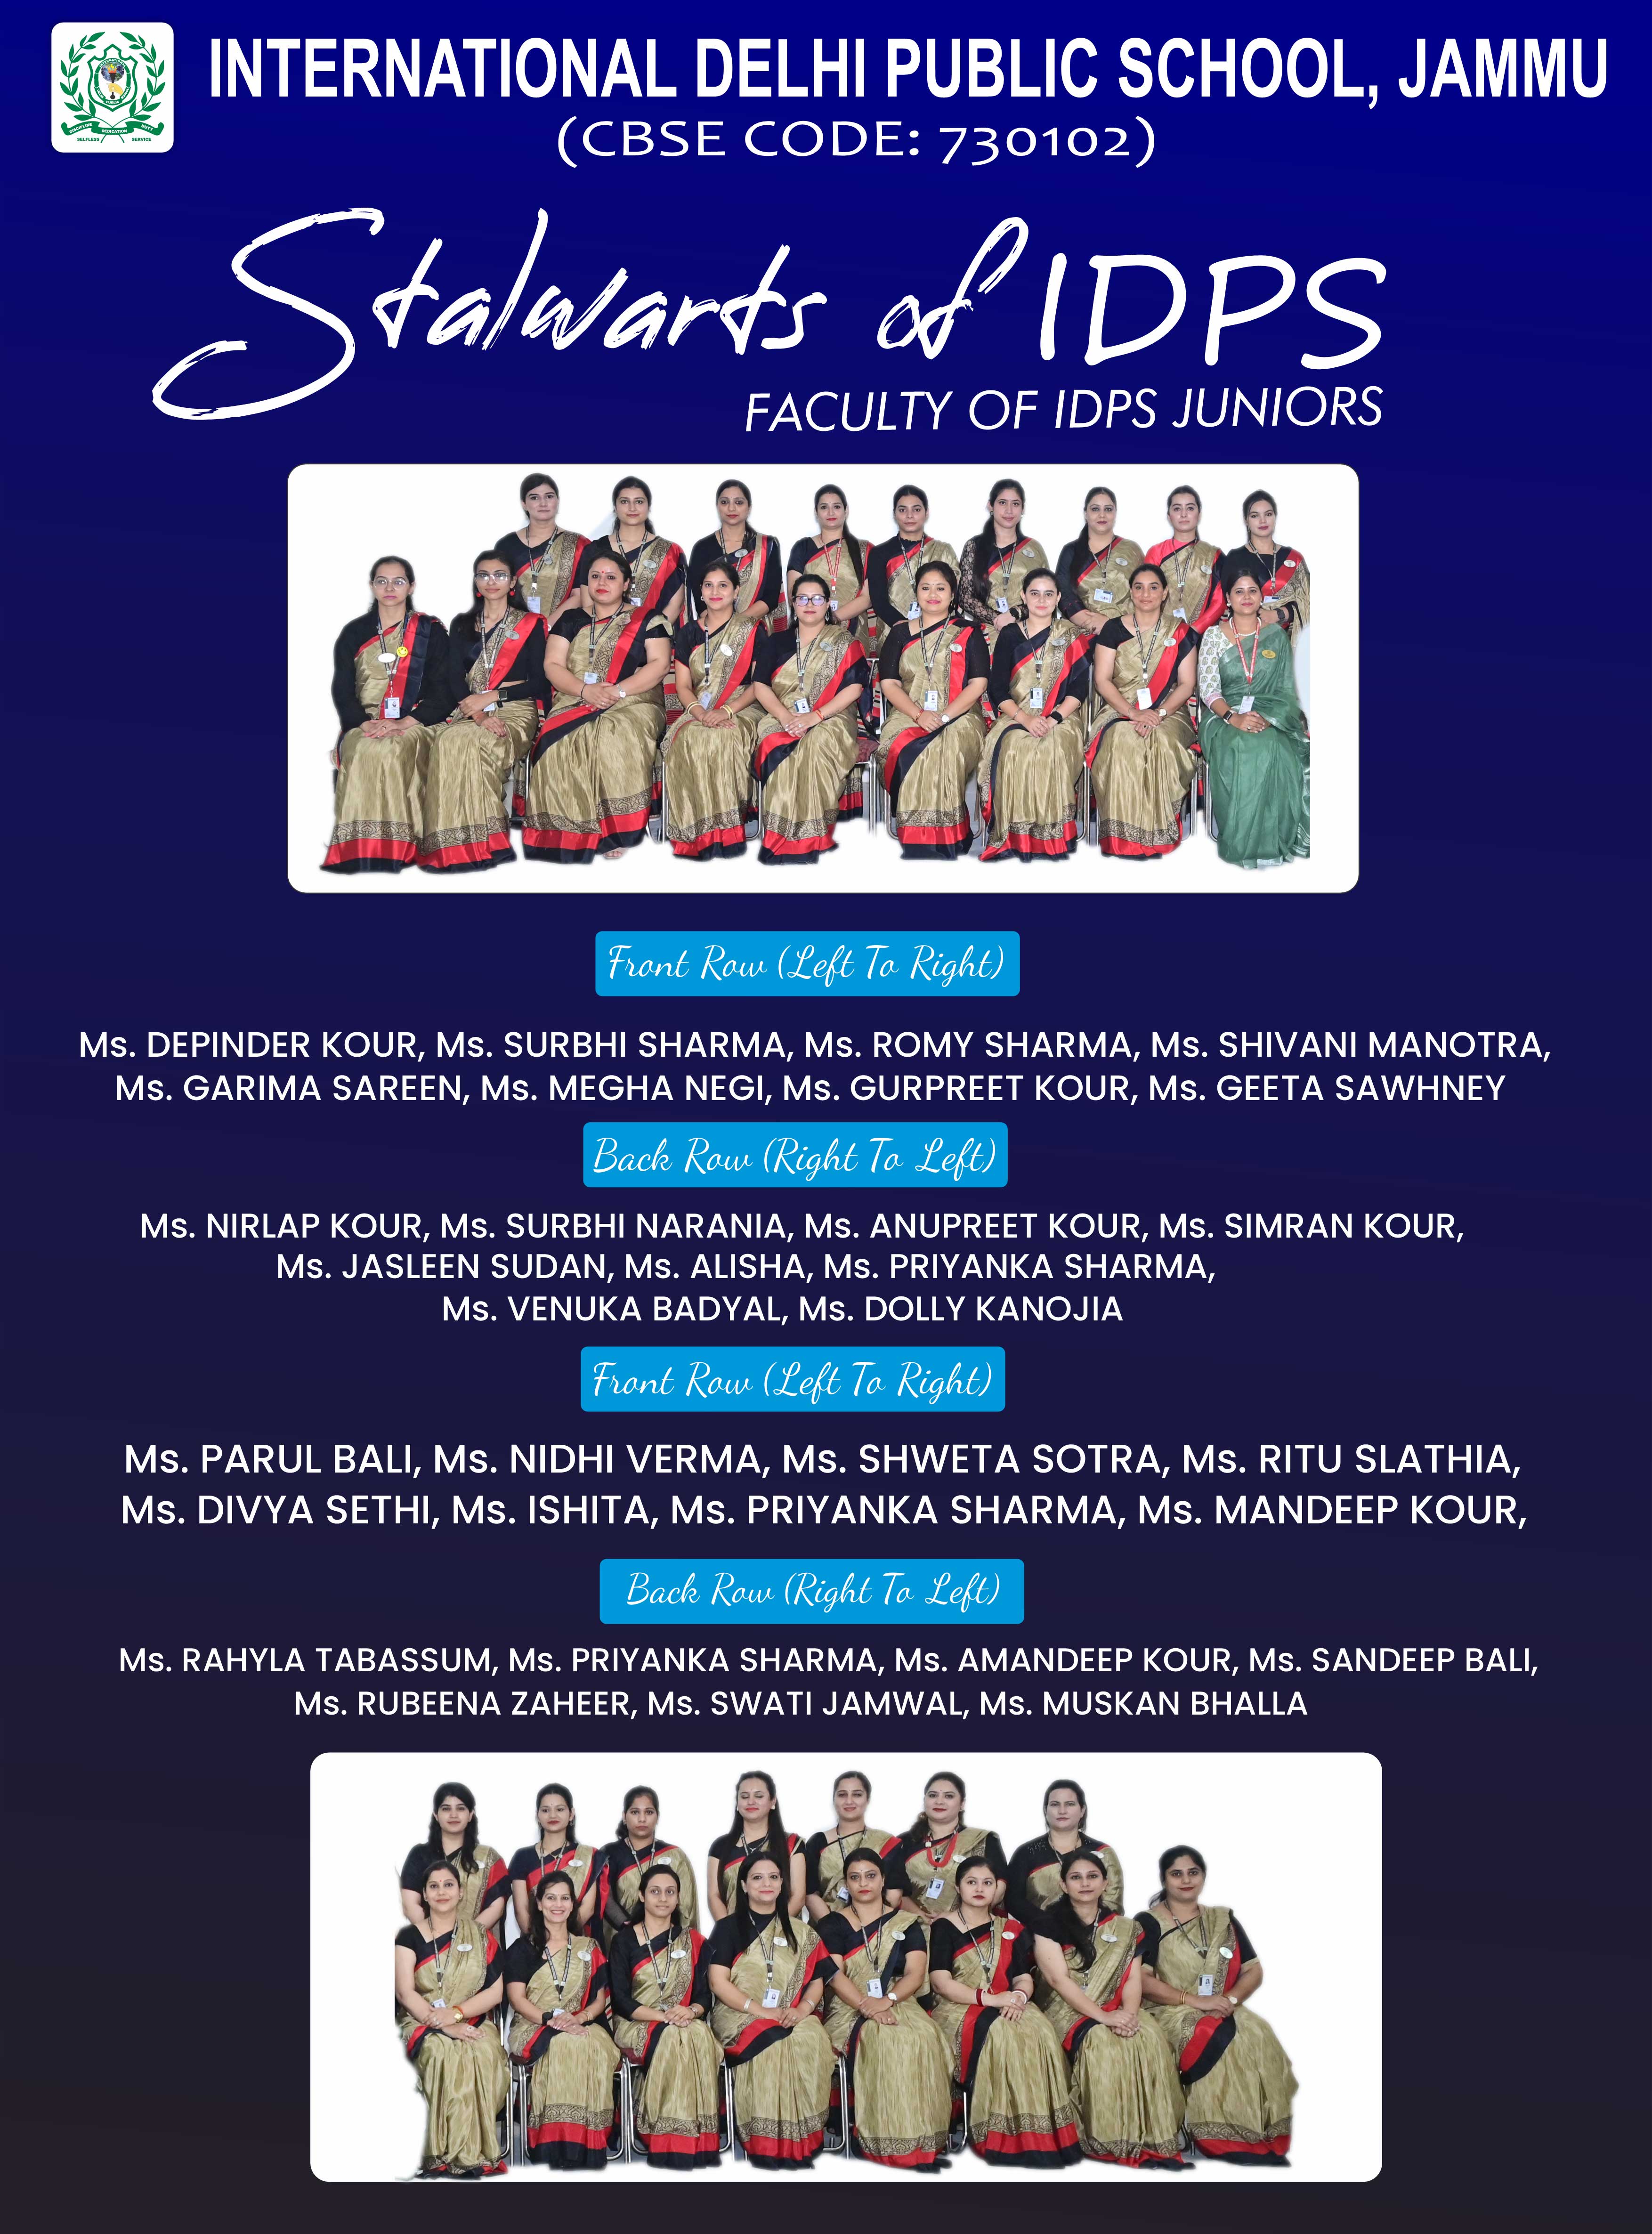 IDPS Juniors Faculty